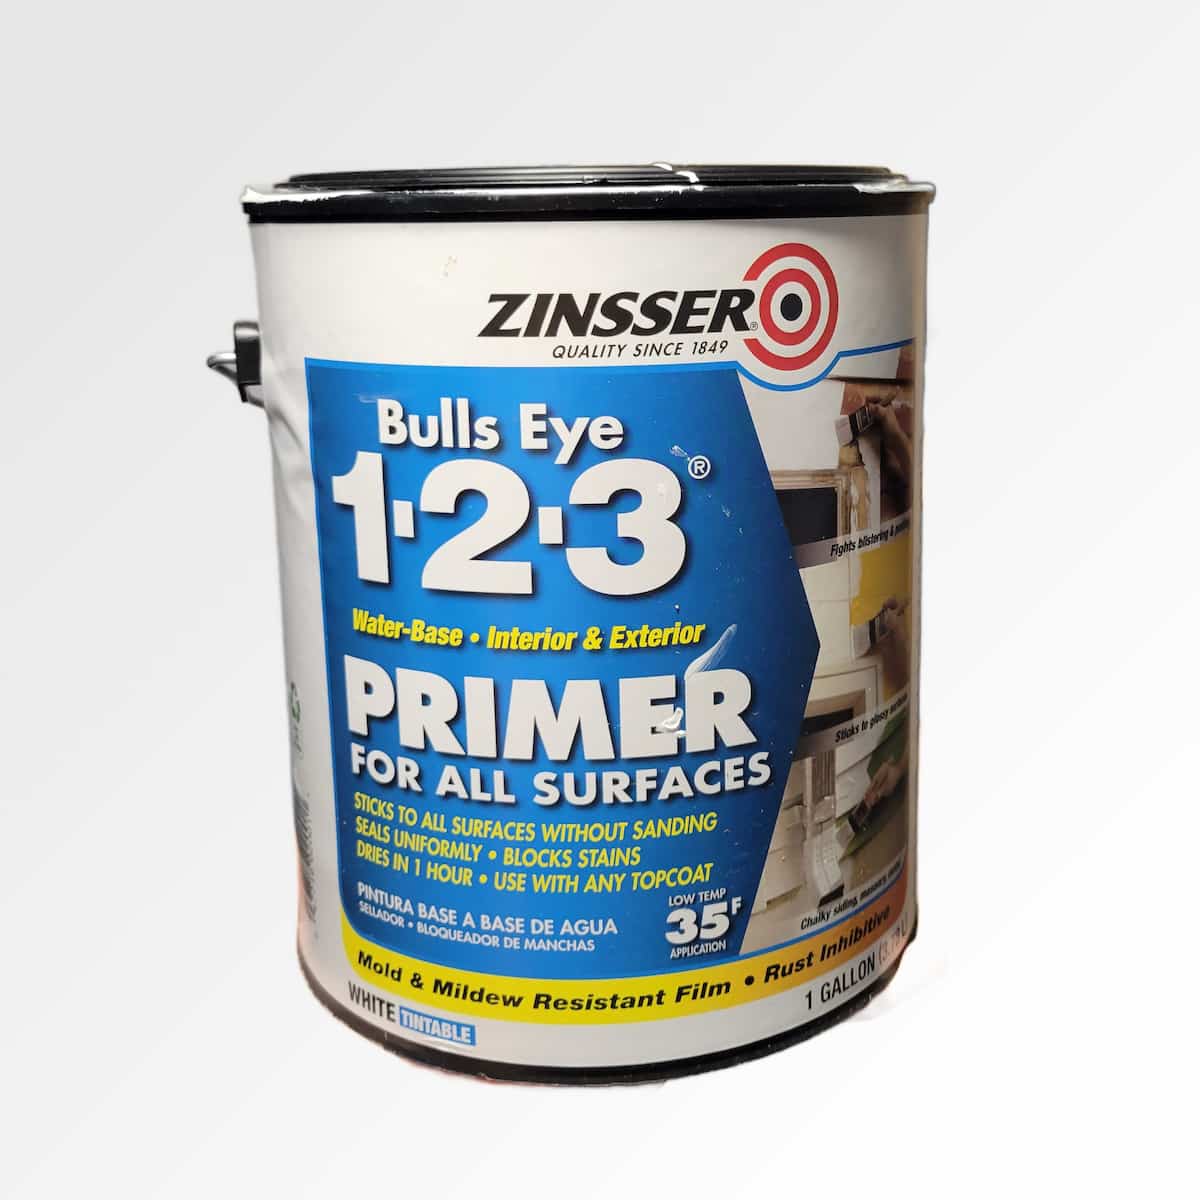 zinsser bulls eye 123 primer use for cabinets